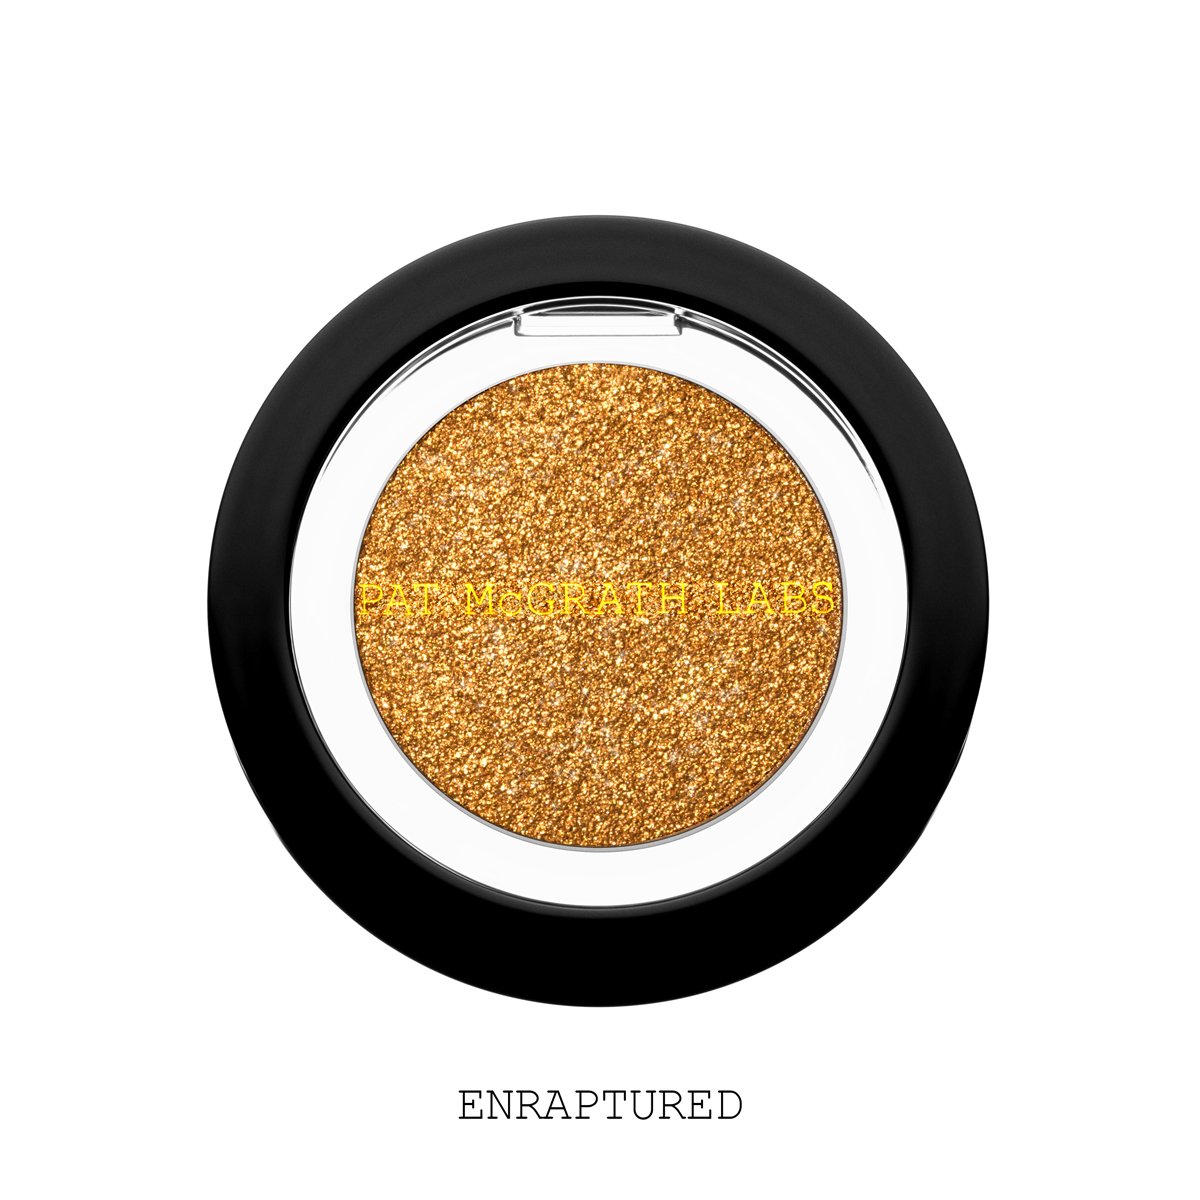 Pat McGrath EYEDOLS™ Metallic Eye Shadow - Enraptured (Gleaming Antiqued Gold)